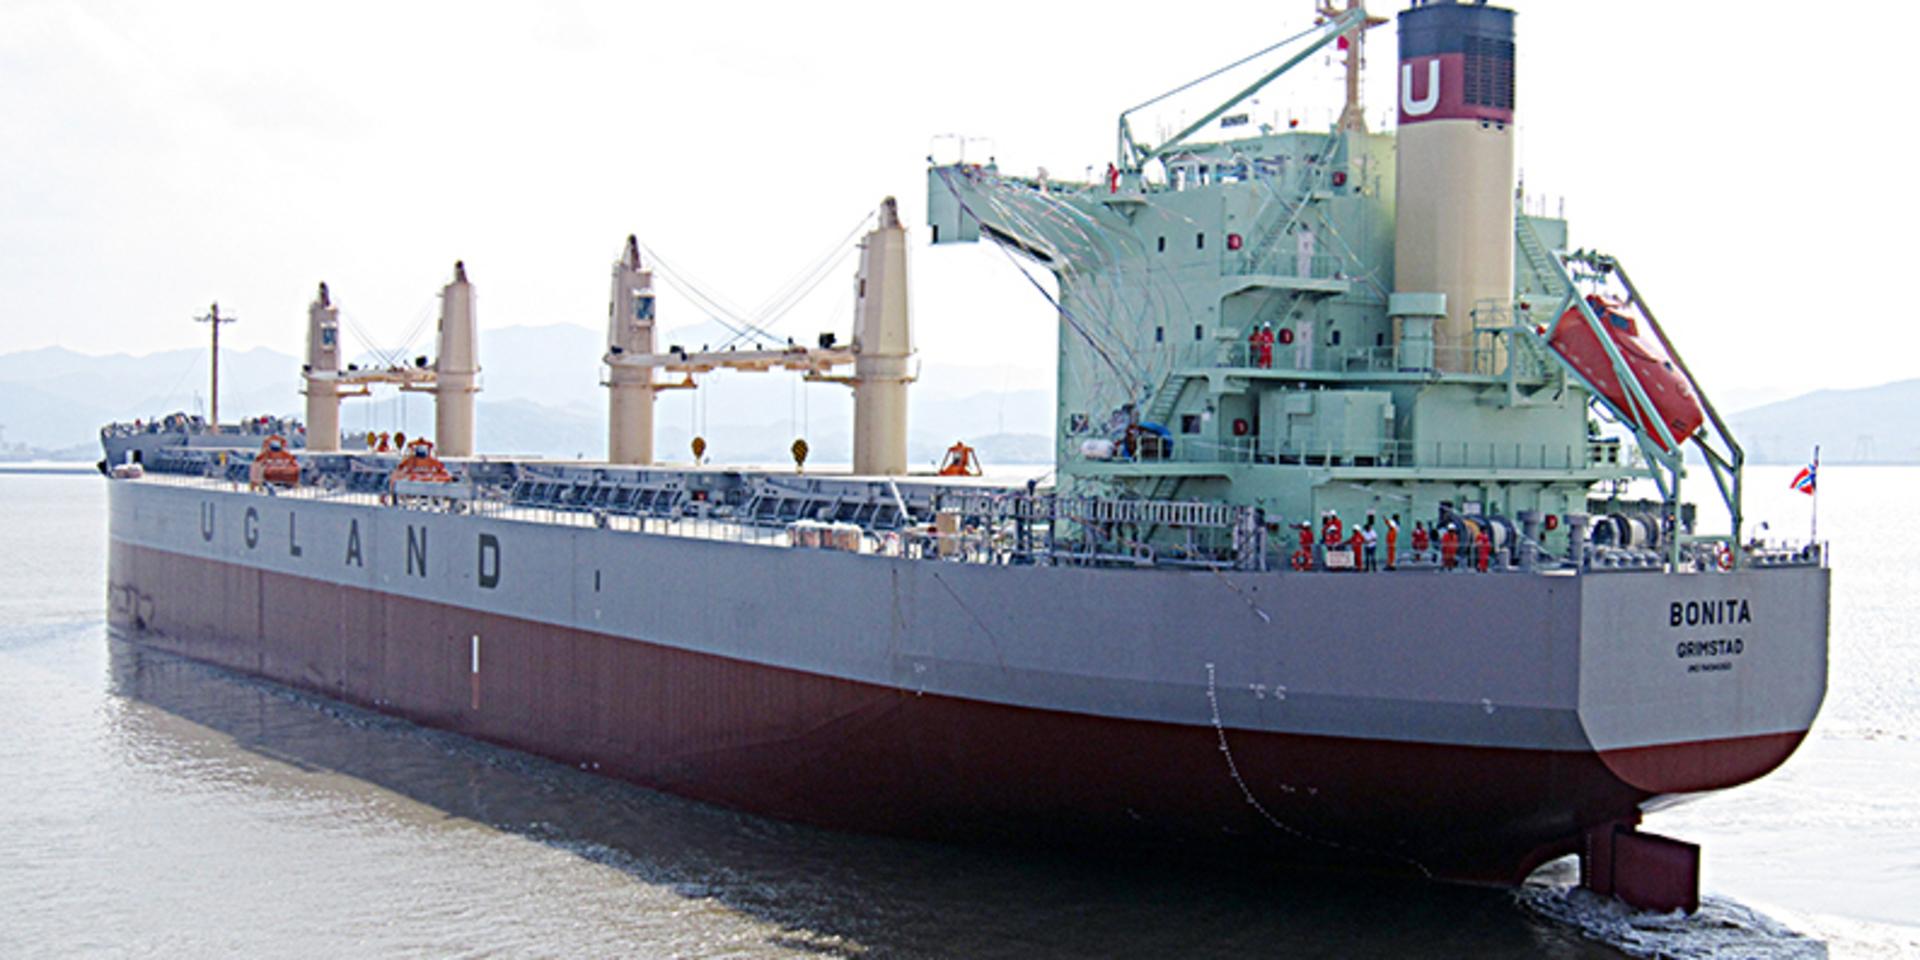 Det norskägda fartyget Bonita attackerades av misstänkta pirater som kidnappade besättningsmedlemmar. Arkivbild från 2010.